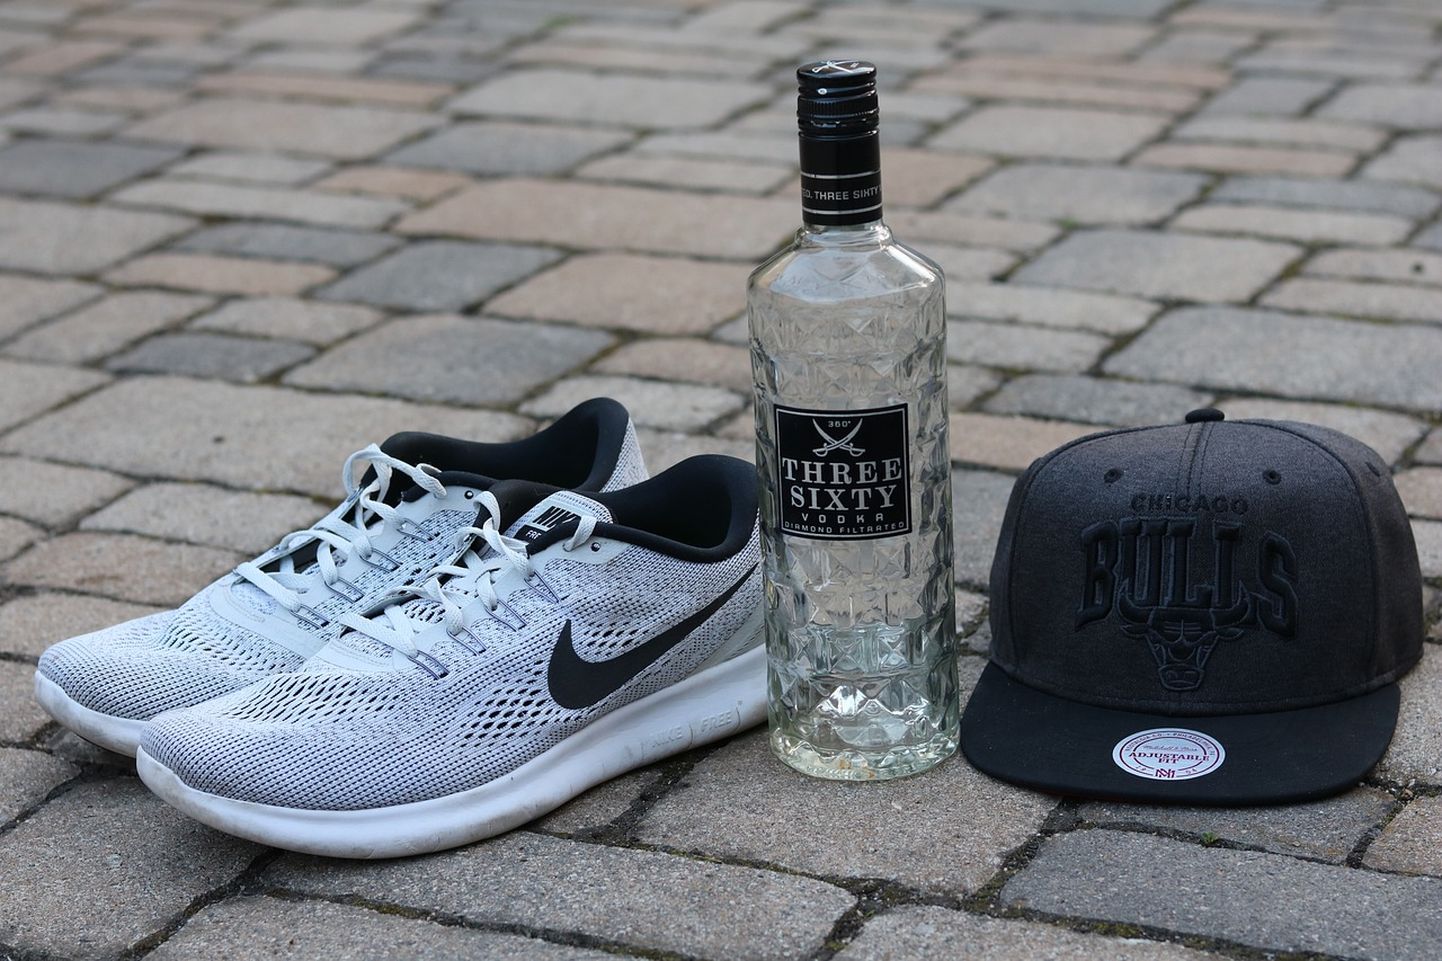 Спортивная обувь и бутылка алкоголя. Фото иллюстративное.